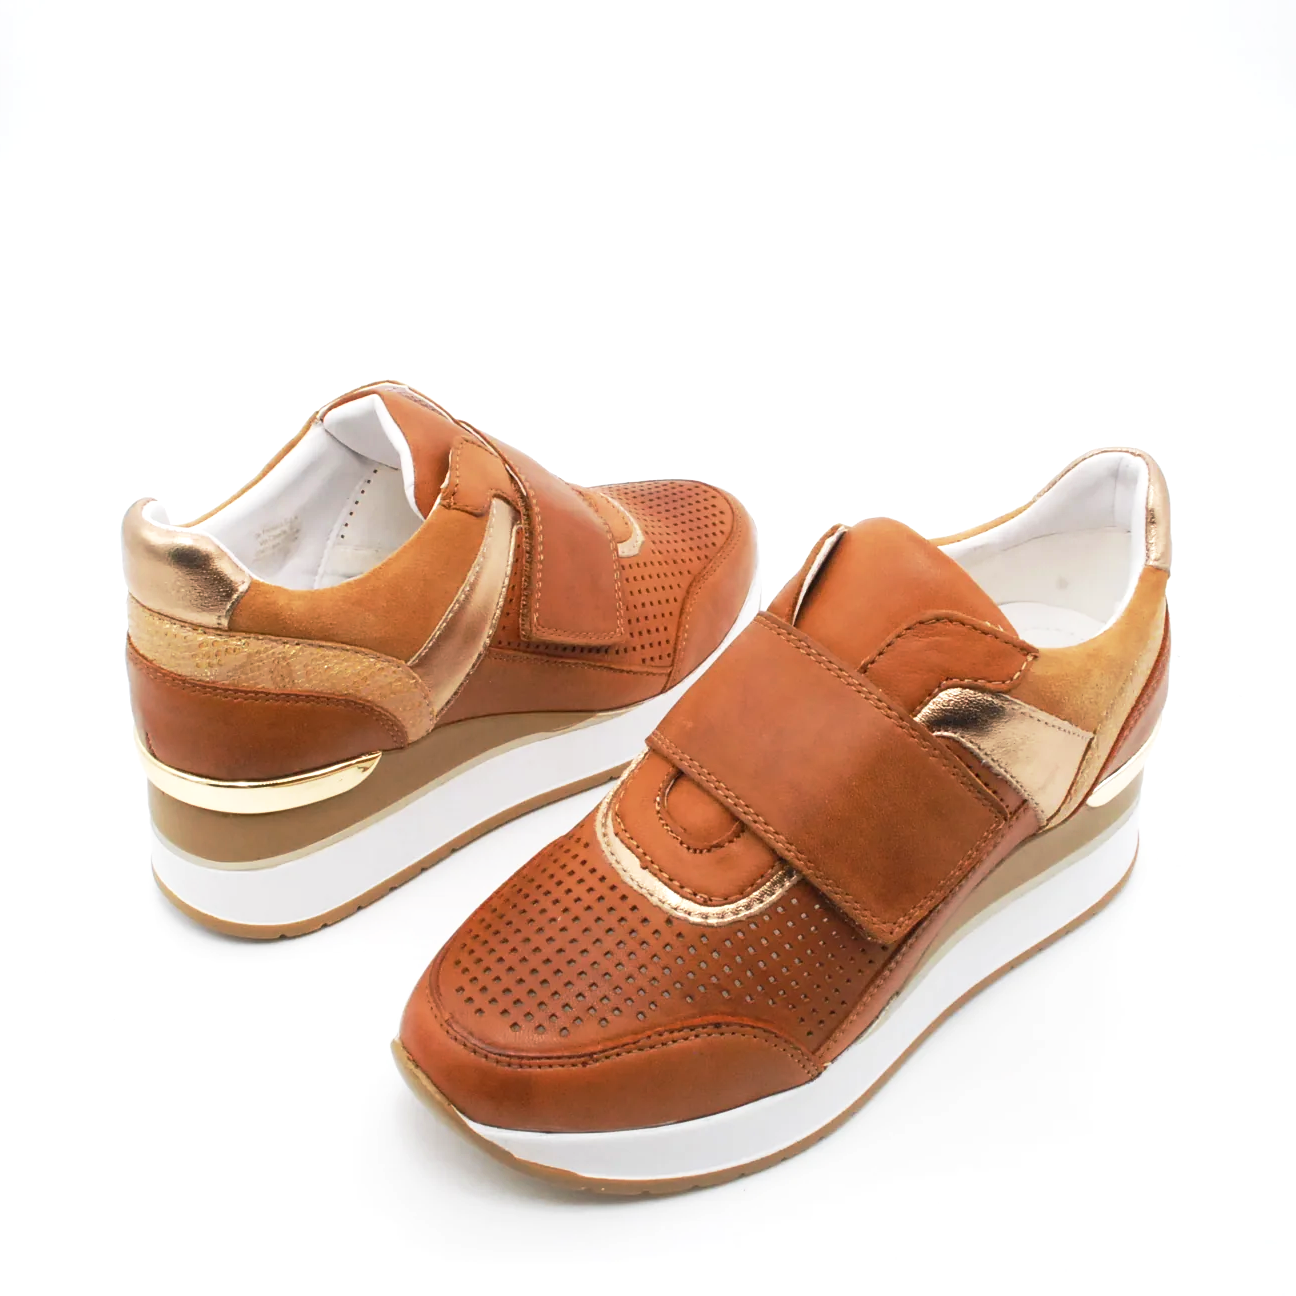 sneakers-riposella-in-pelle-comfort-7.png